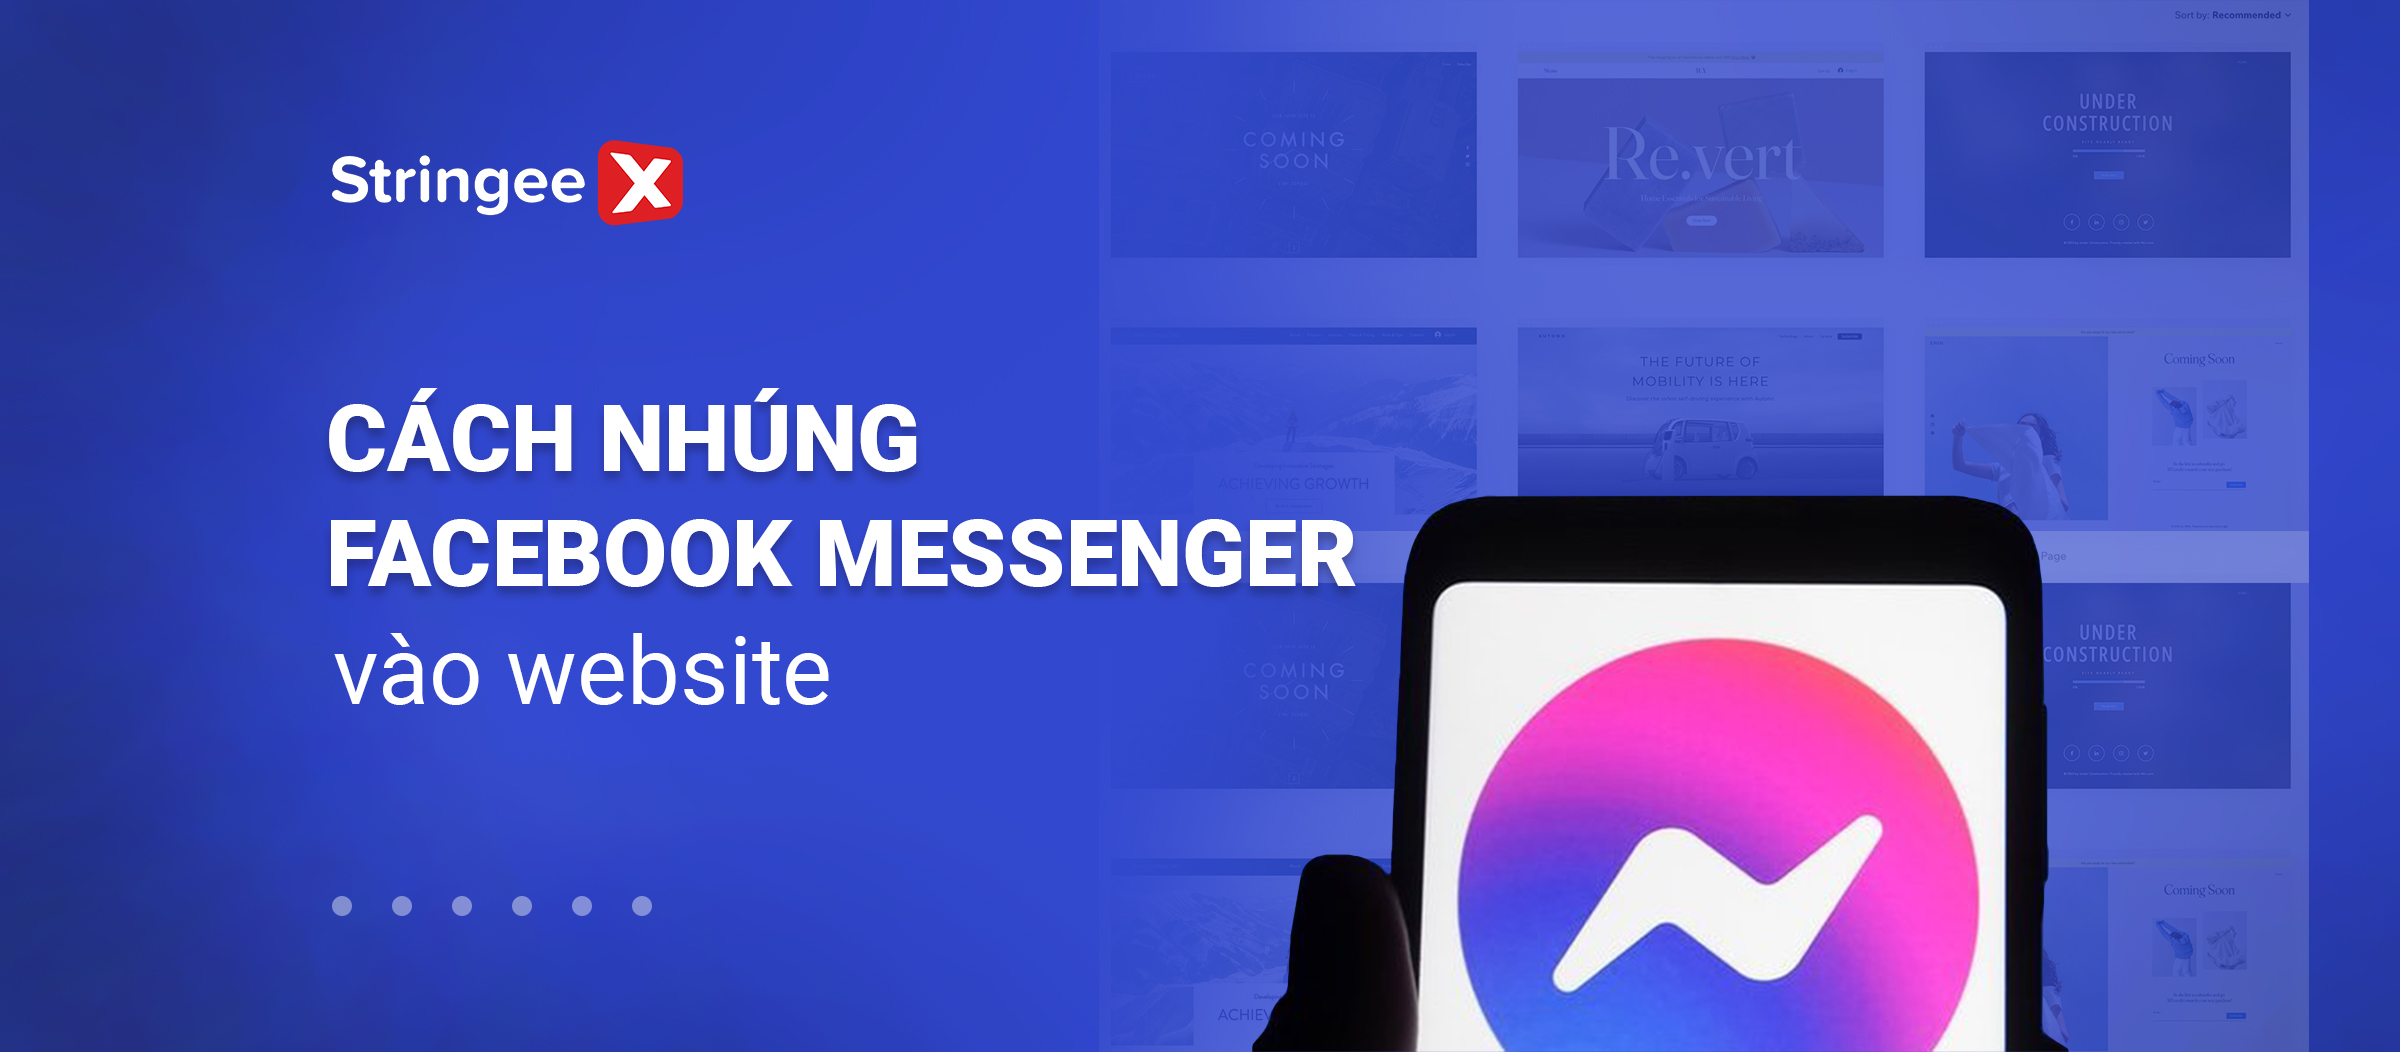 Hướng dẫn chi tiết cách nhúng Facebook Messenger vào Website